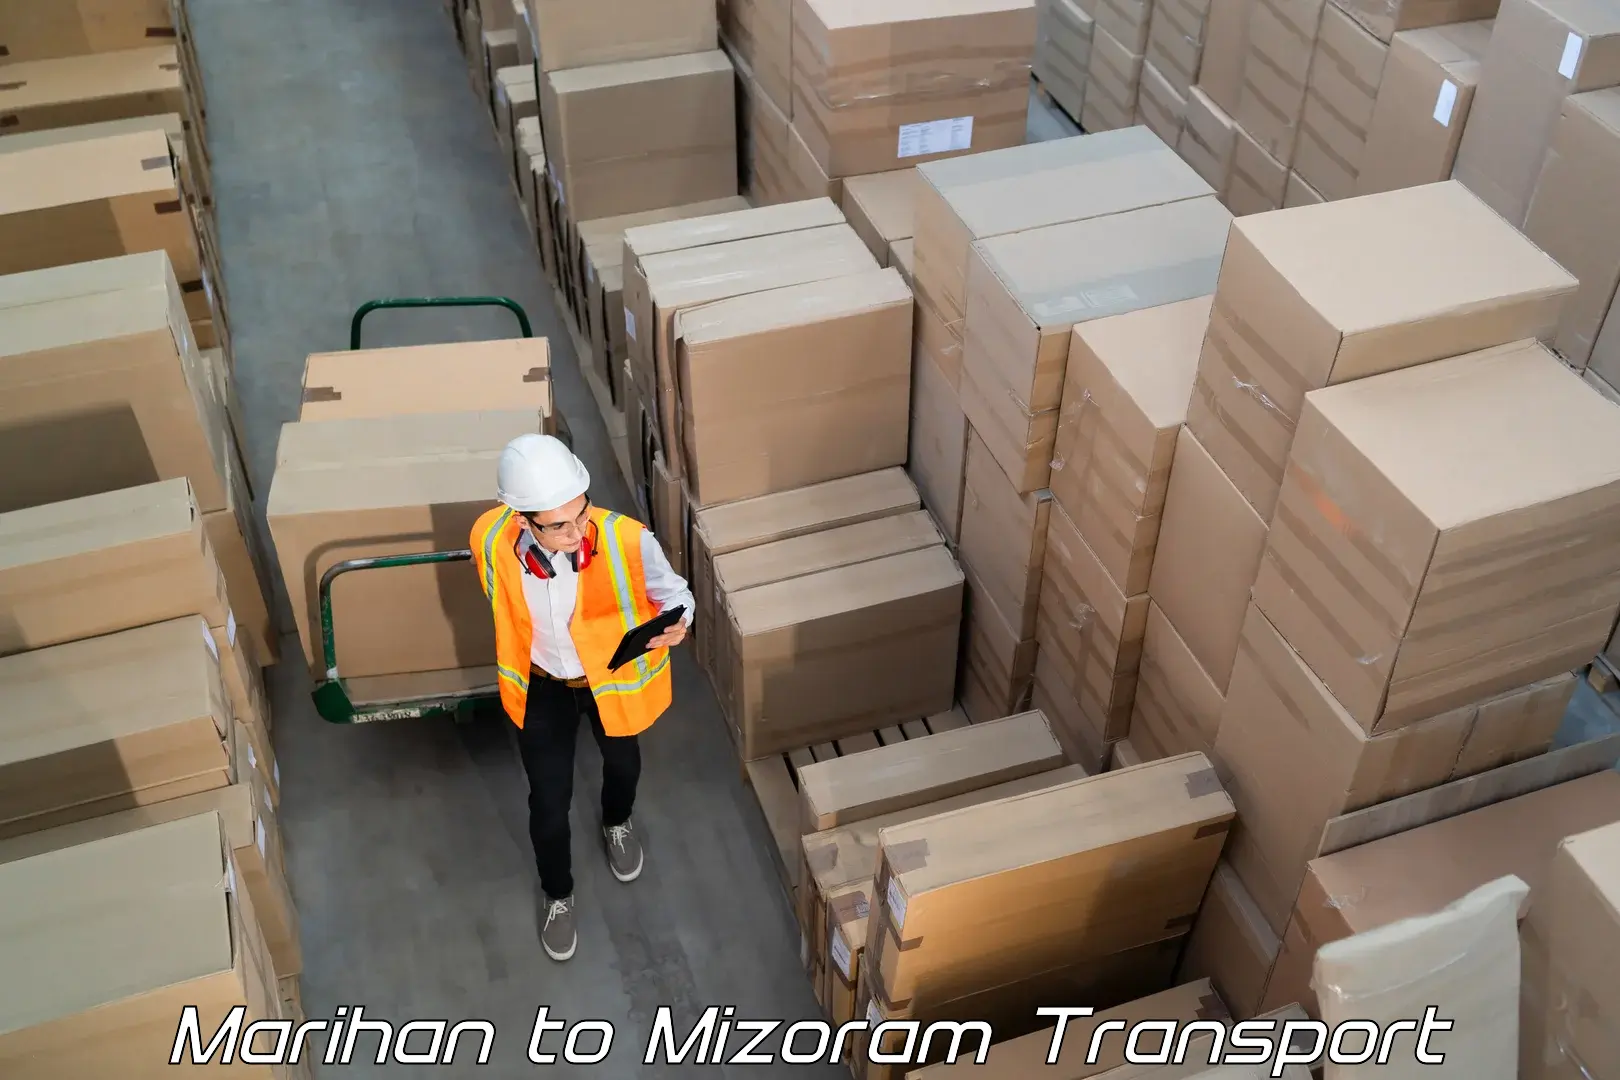 Shipping services Marihan to Mizoram